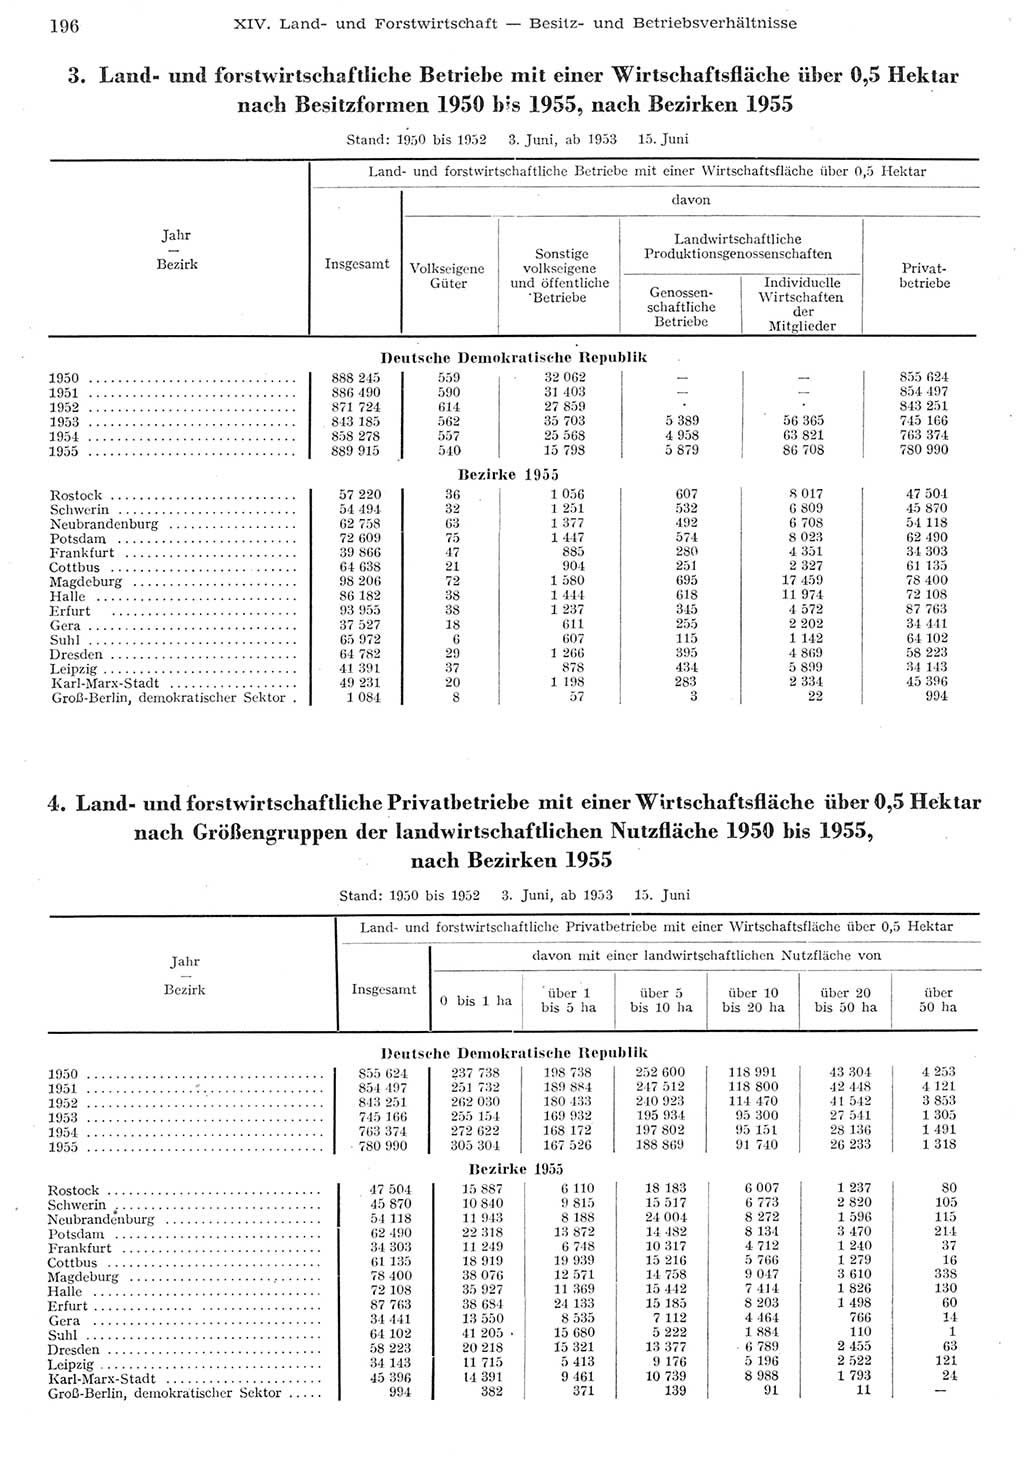 Statistisches Jahrbuch der Deutschen Demokratischen Republik (DDR) 1955, Seite 196 (Stat. Jb. DDR 1955, S. 196)